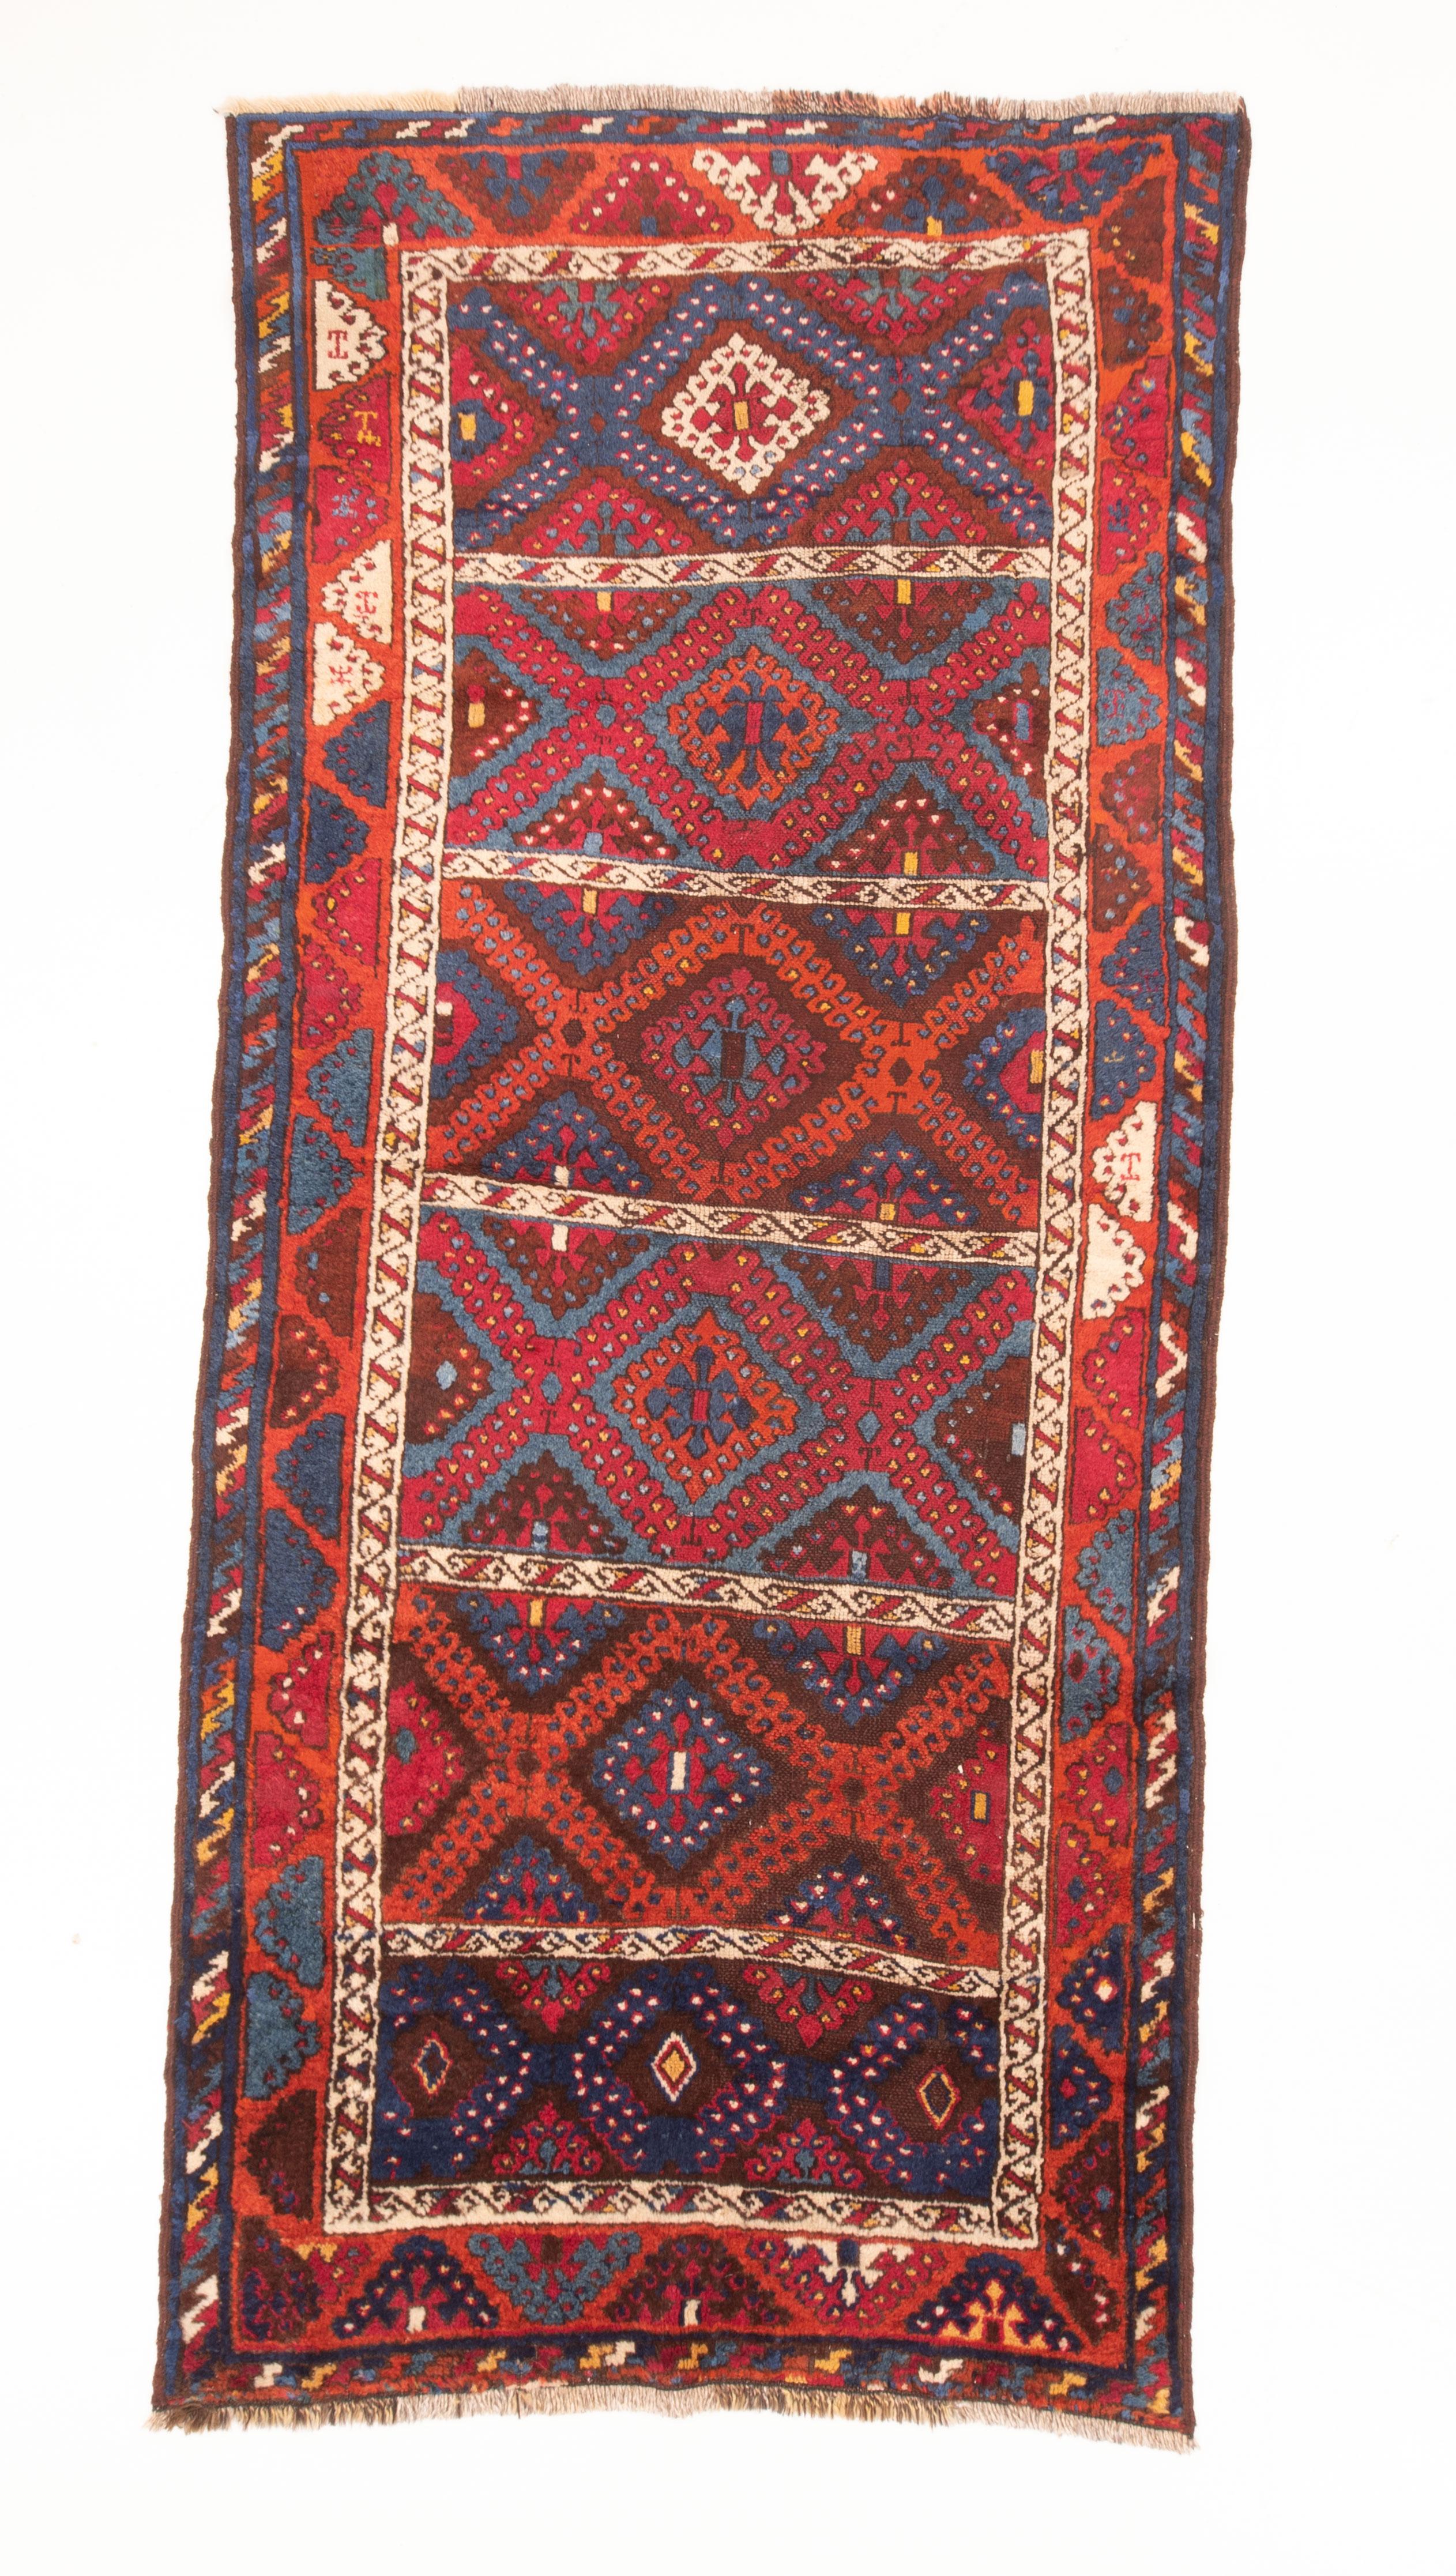 Ein antiker Teppich aus Ostanatolien. Mitte 19. Jahrhundert.
Es ist in recht gutem Zustand und wurde professionell gereinigt und repariert.